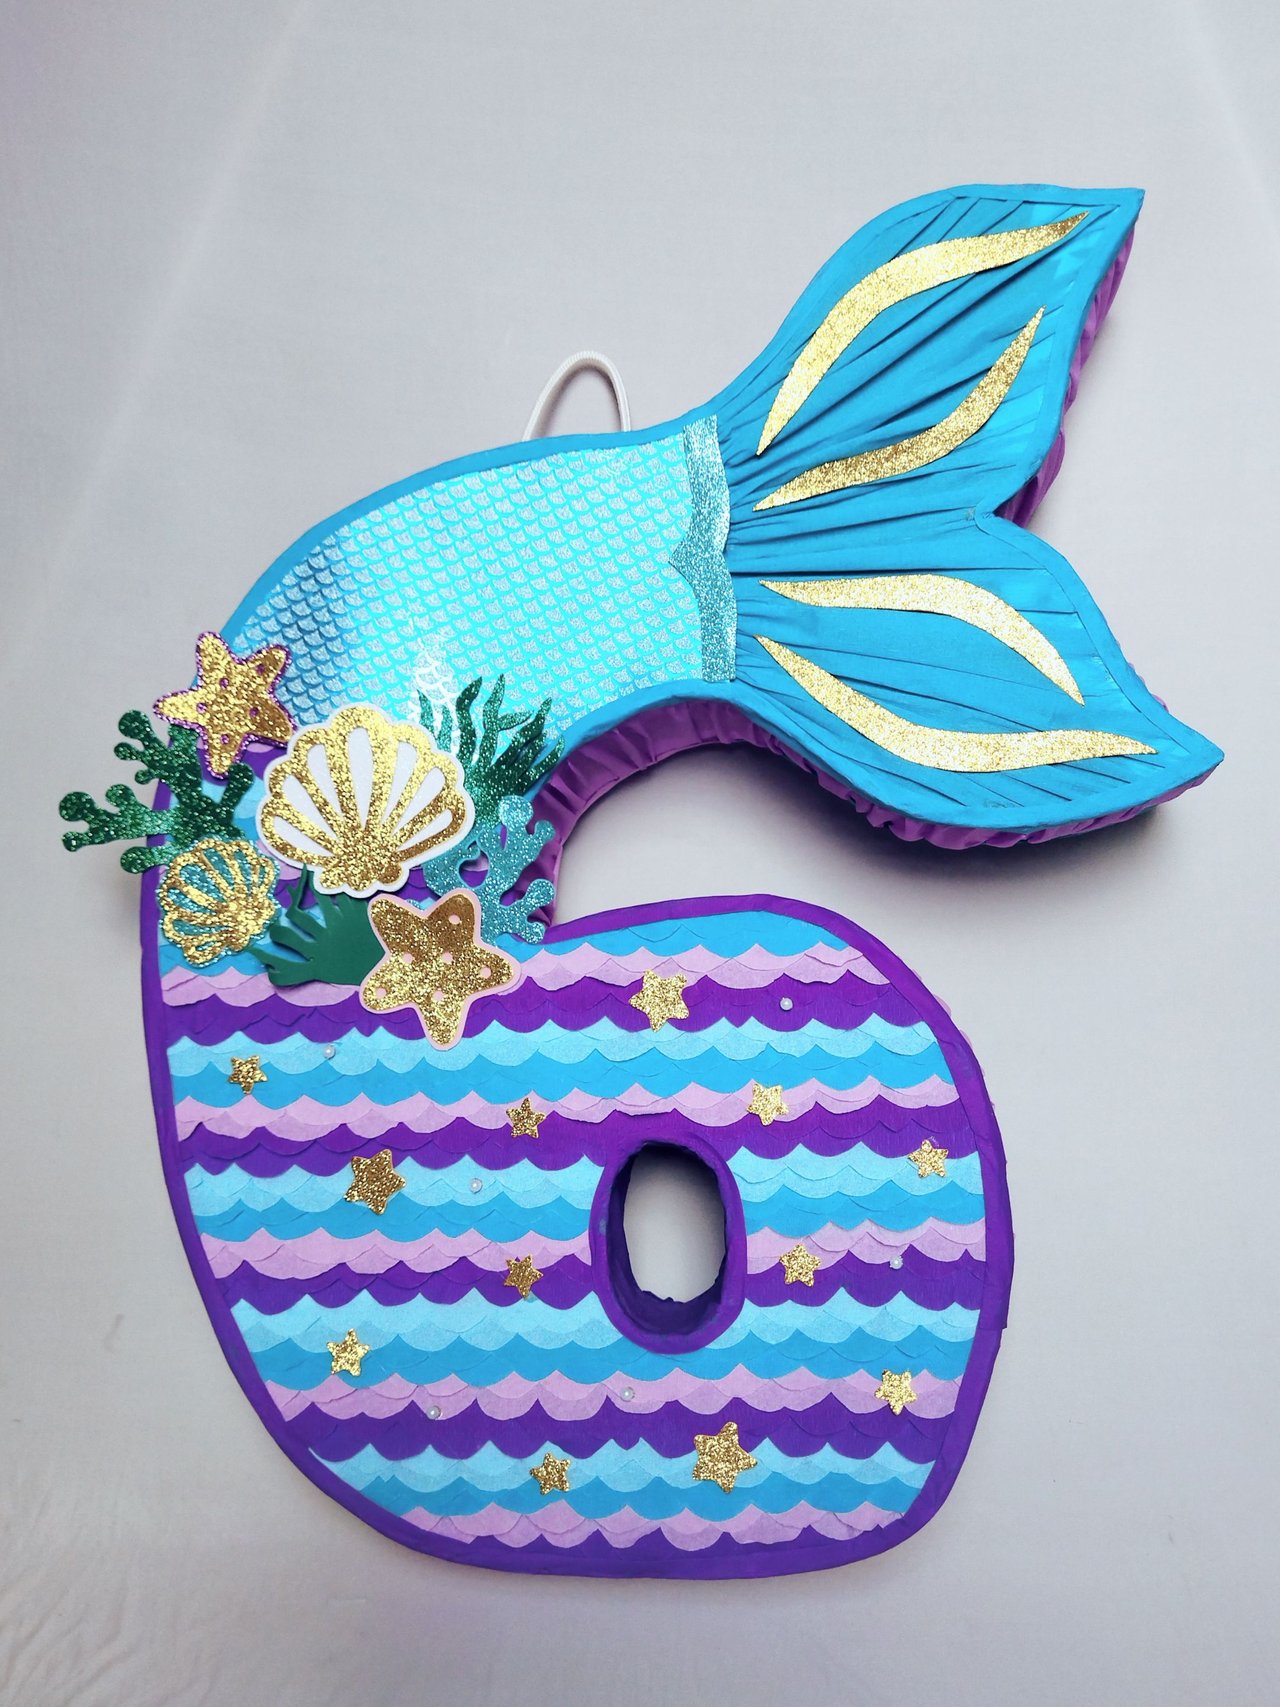 ESP-ING] 🧜‍♀️Hice una mega piñata de número 6 con motivo de cola de sirena.  🧜‍♀️, 🧜‍♀️I made a number 6 mega piñata with mermaid tail motif. 🧜‍♀️